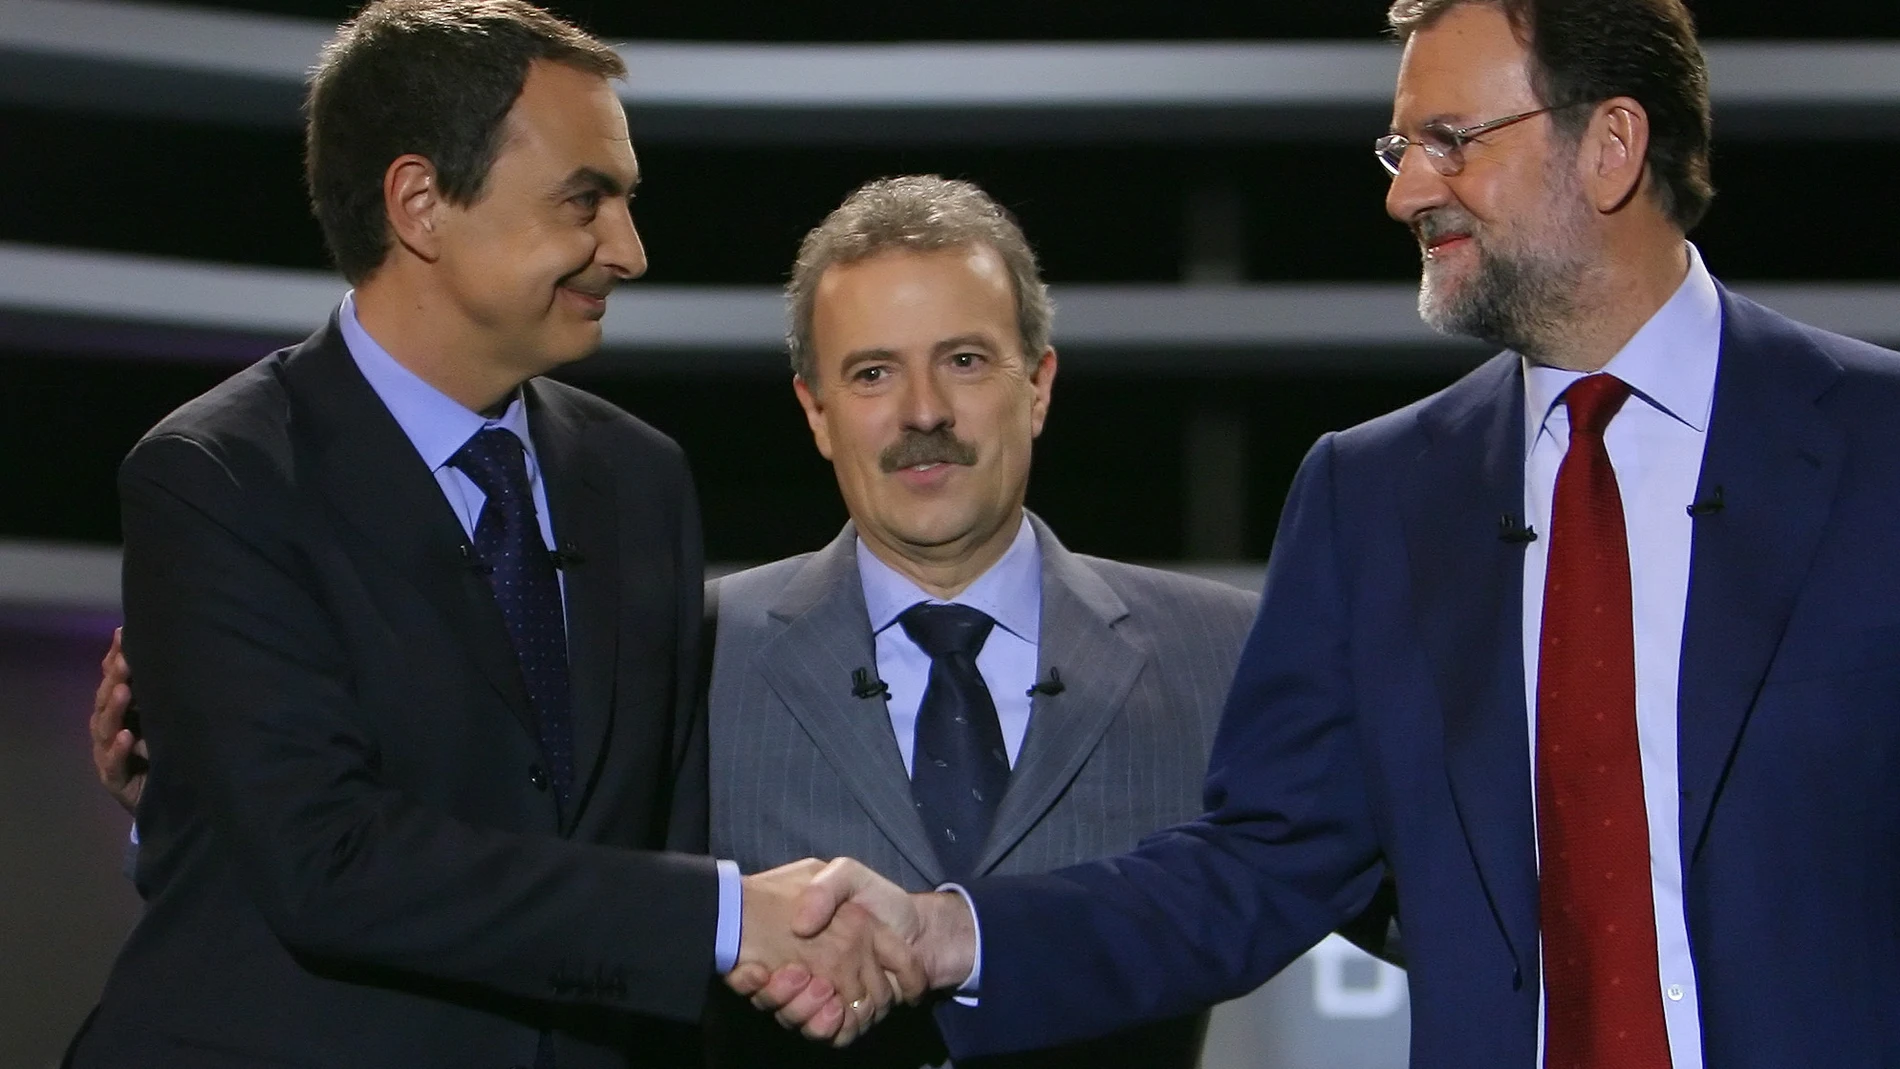 Imagen de uno de los debates electorales entre José Luis Rodríguez Zapatero y Mariano Rajoy. (Foto: Alberto R. Roldán)